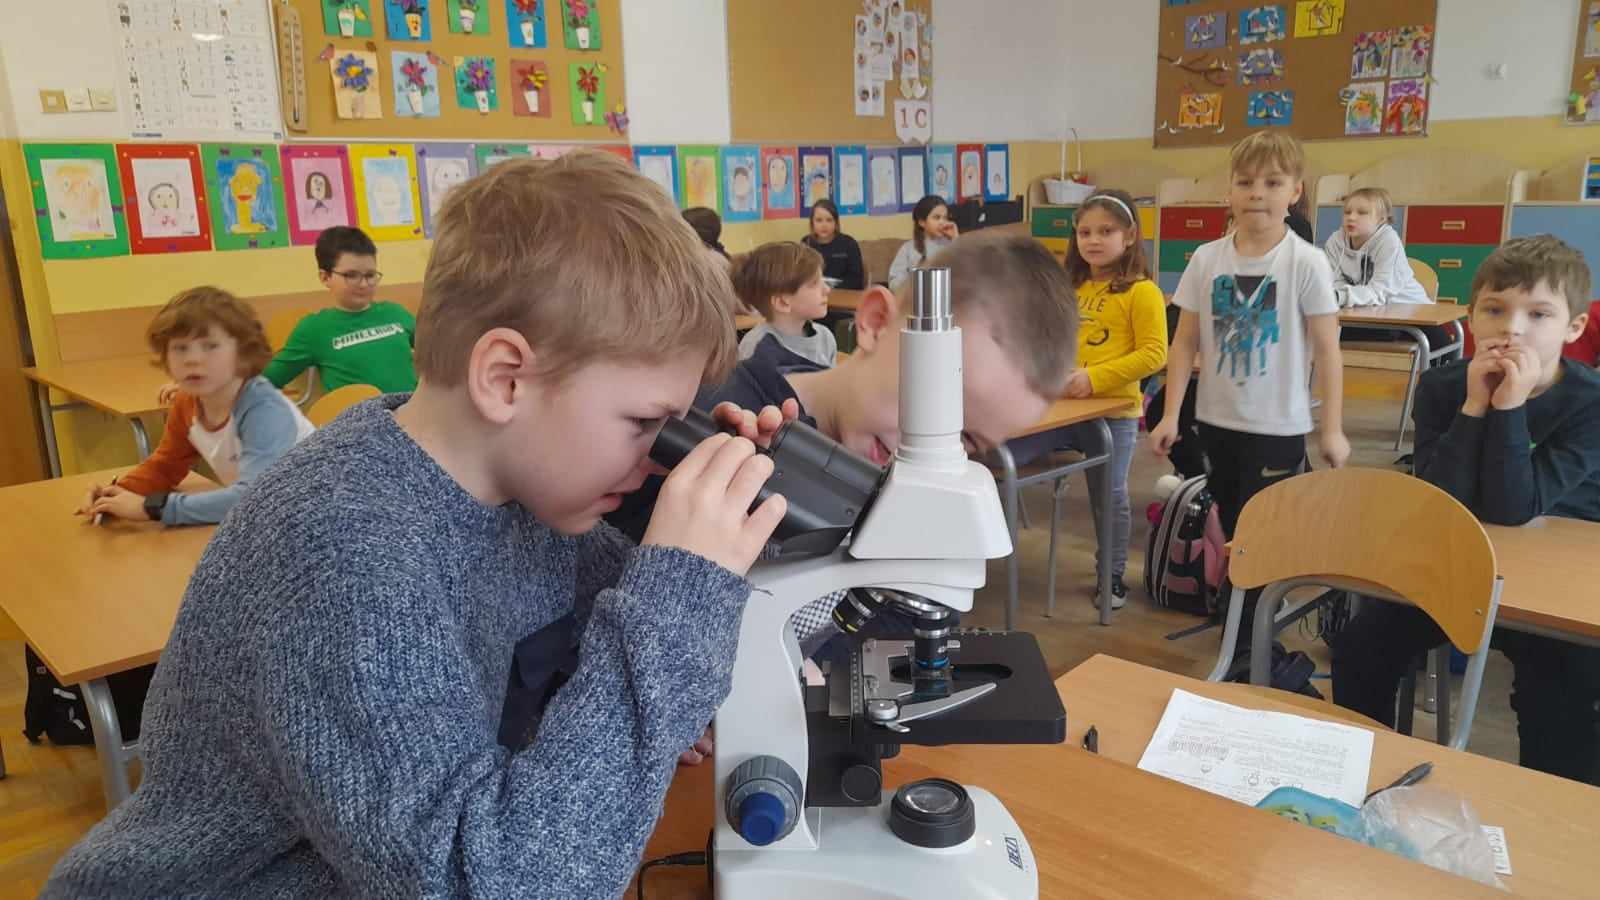 Grupa 20 dzieci znajduje się w sali lekcyjnej. Na pierwszym planie jest chłopiec, który ogląda pod mikroskopem kroplę wody.